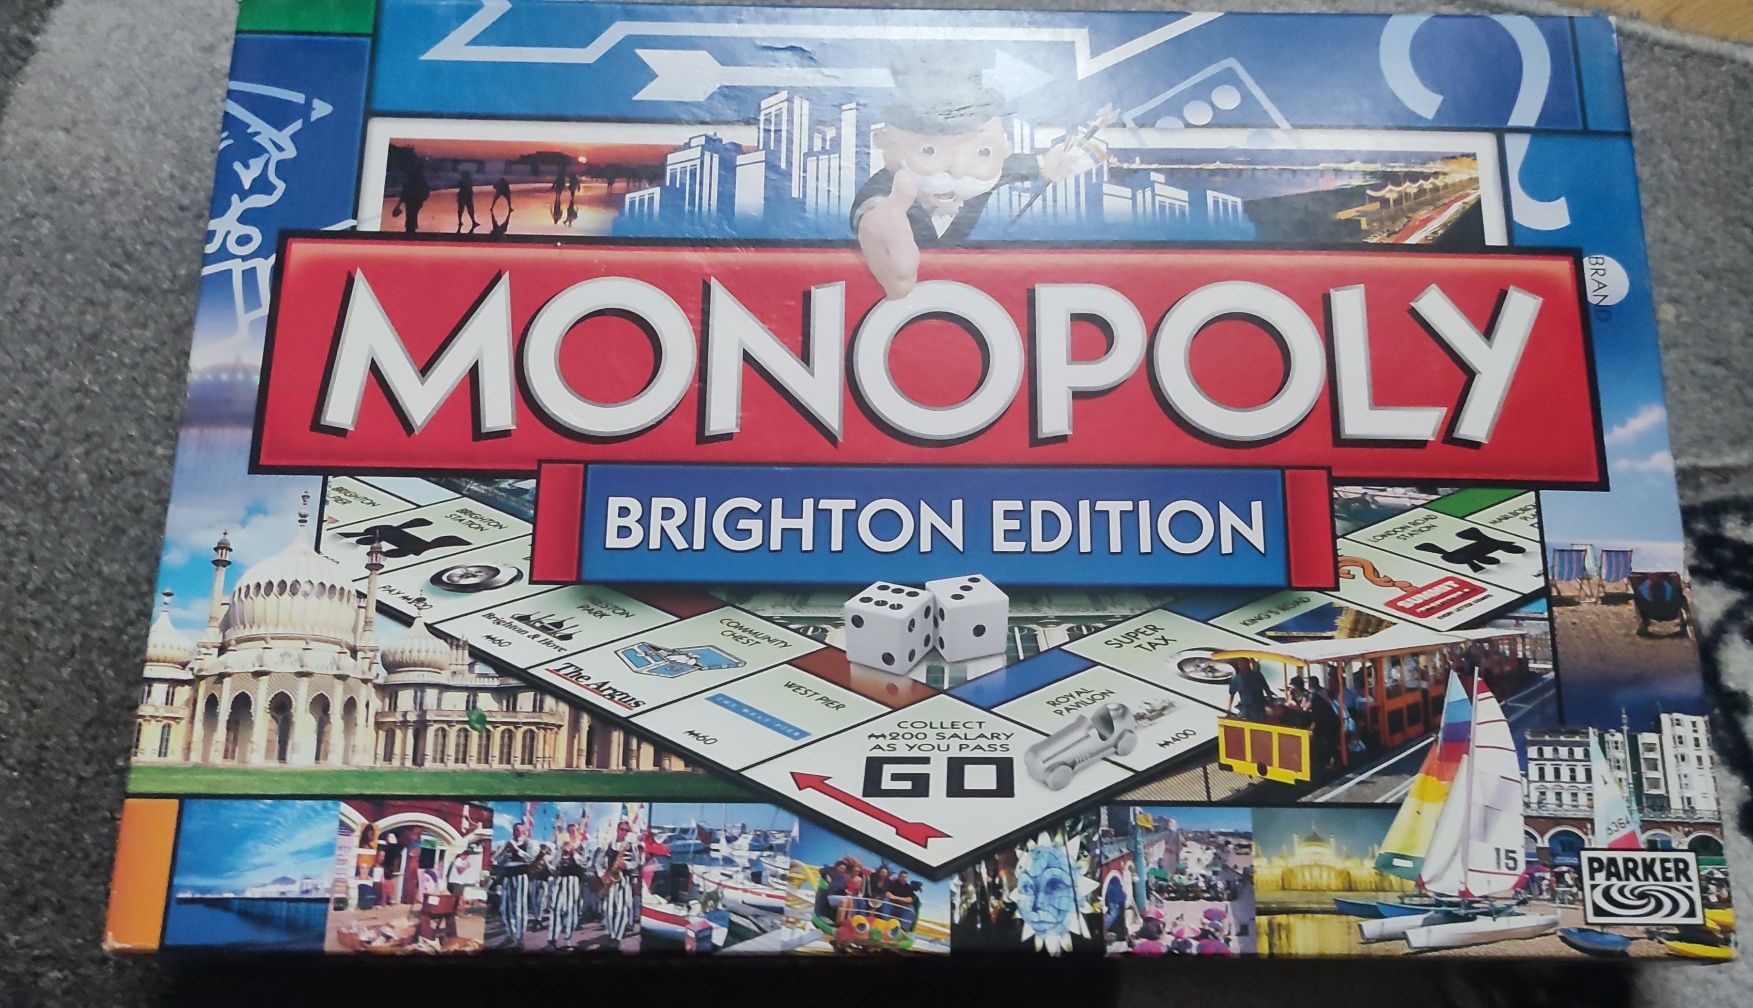 Monopoly Brighton edition